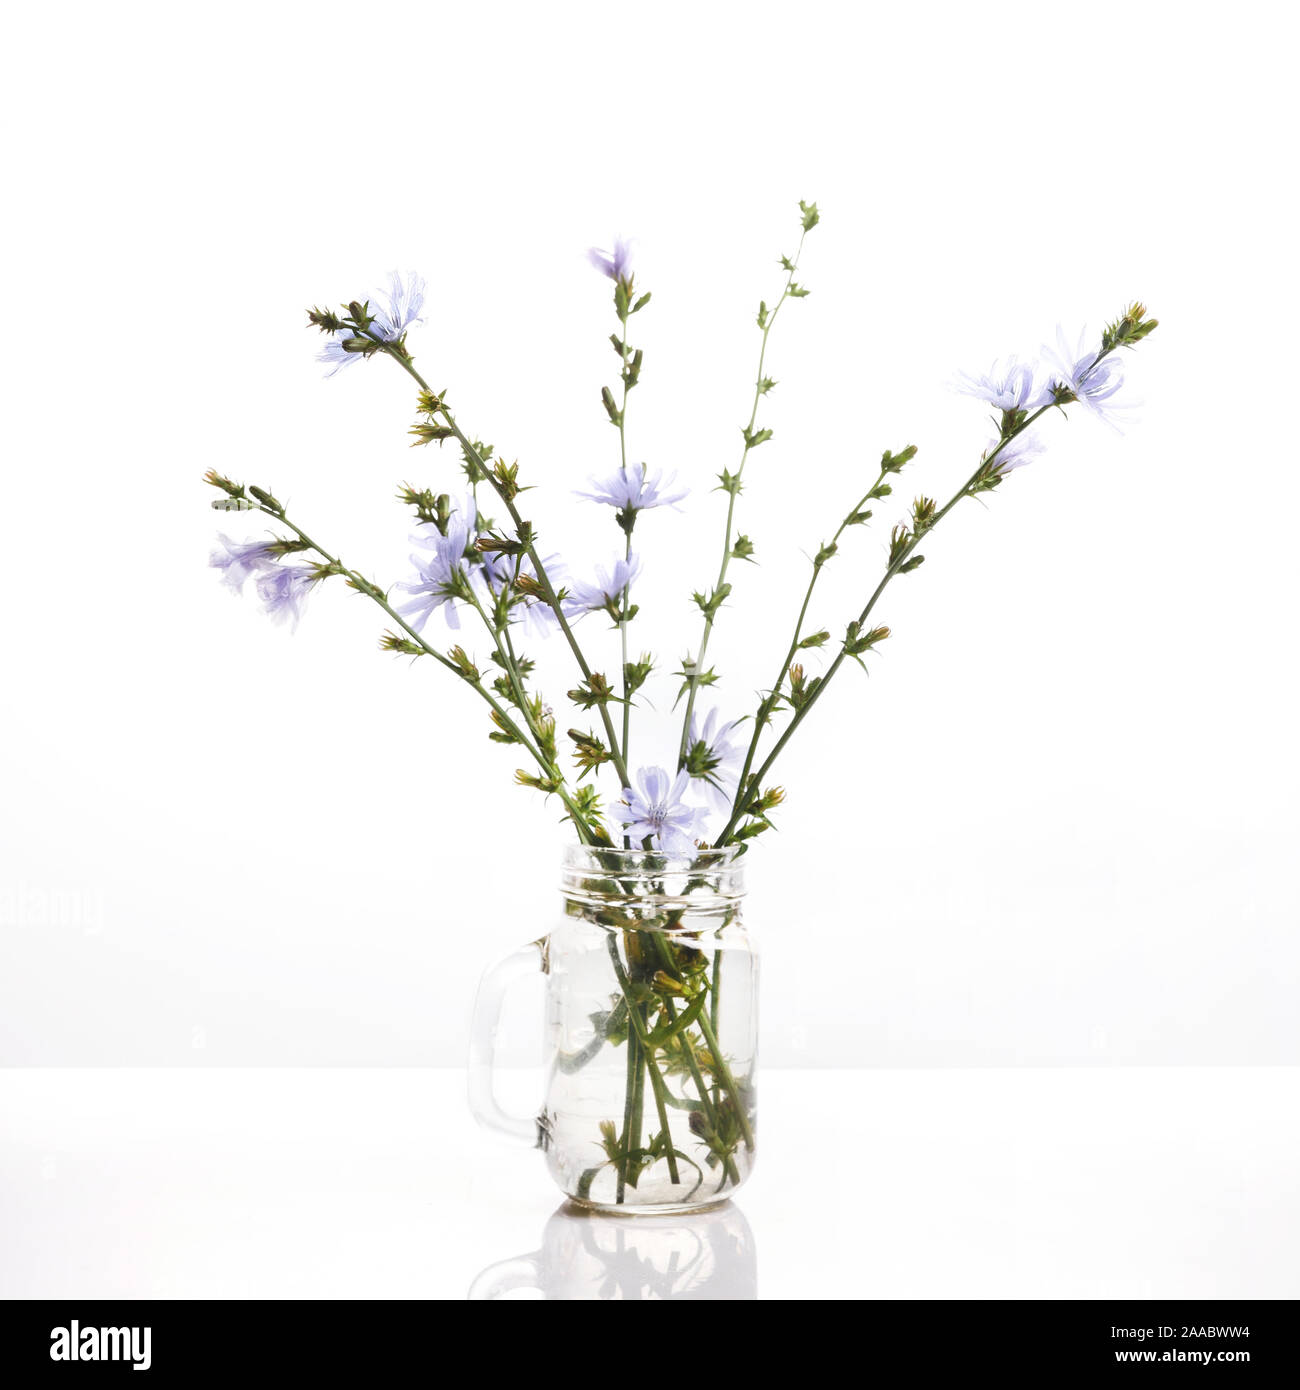 Cichorium intybus - cicoria comune fiori isolati su sfondo bianco Foto Stock